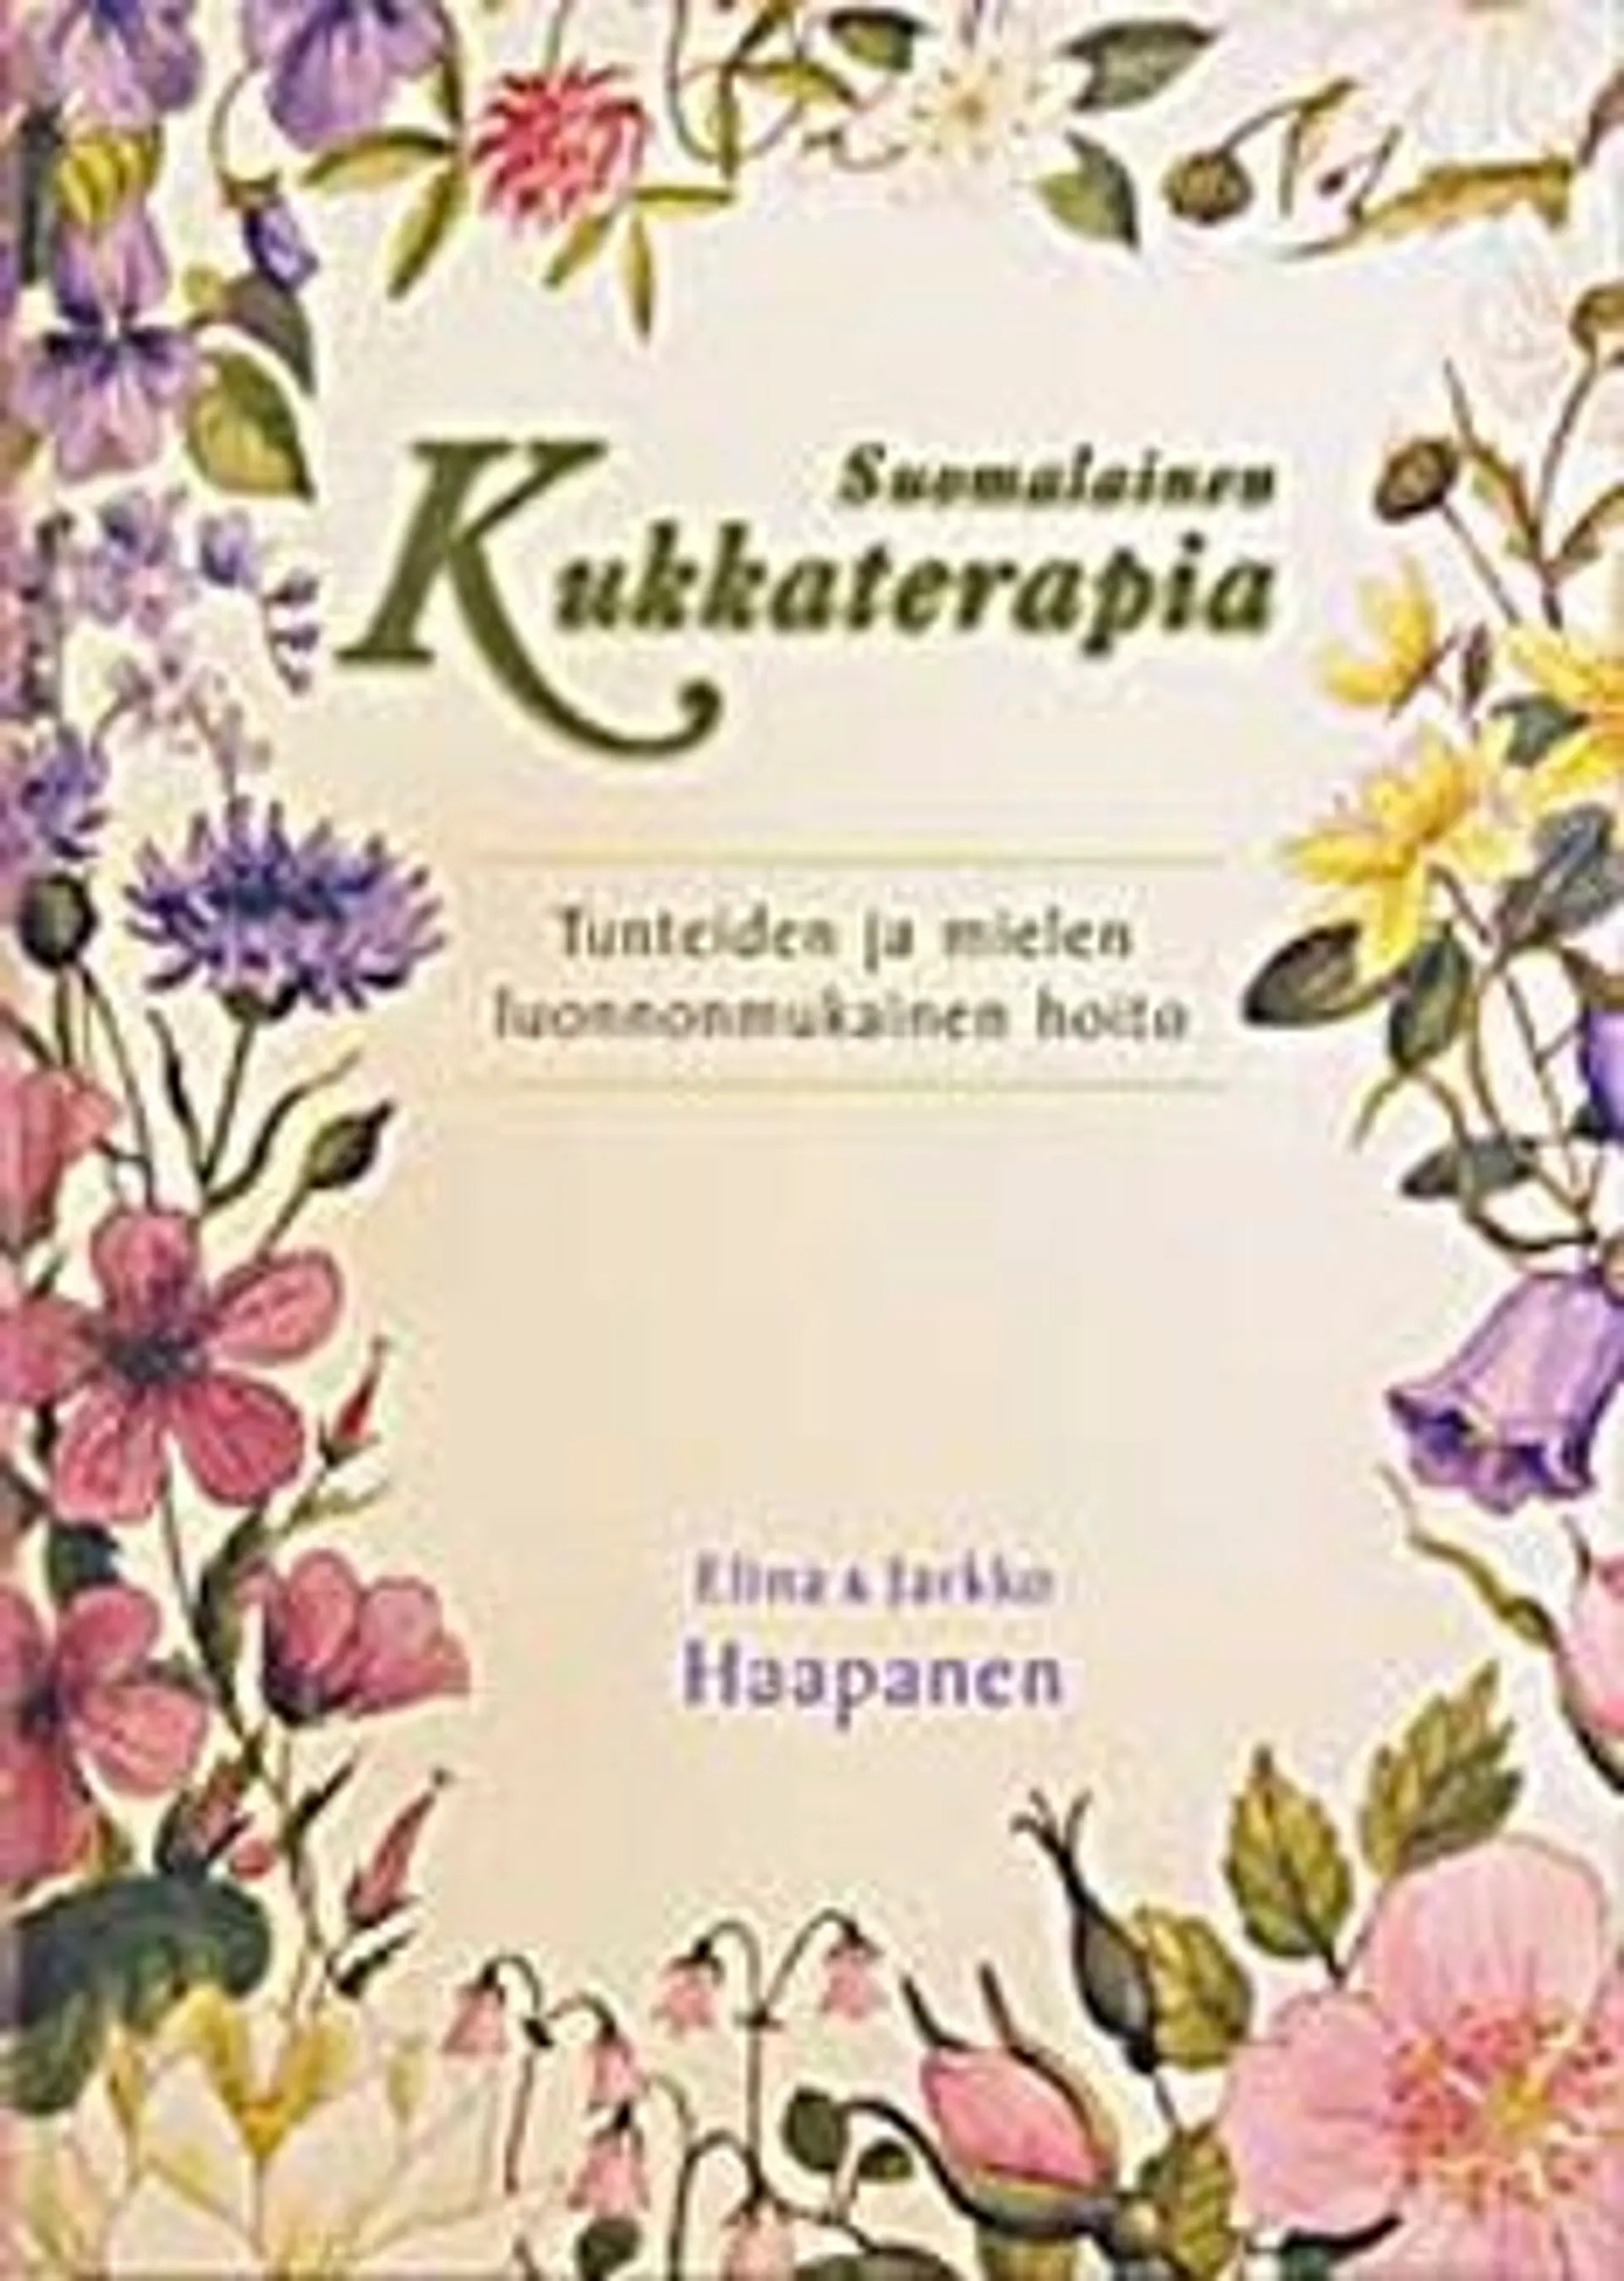 Haapanen, Suomalainen kukkaterapia - tunteiden ja mielen luonnonmukainen hoito